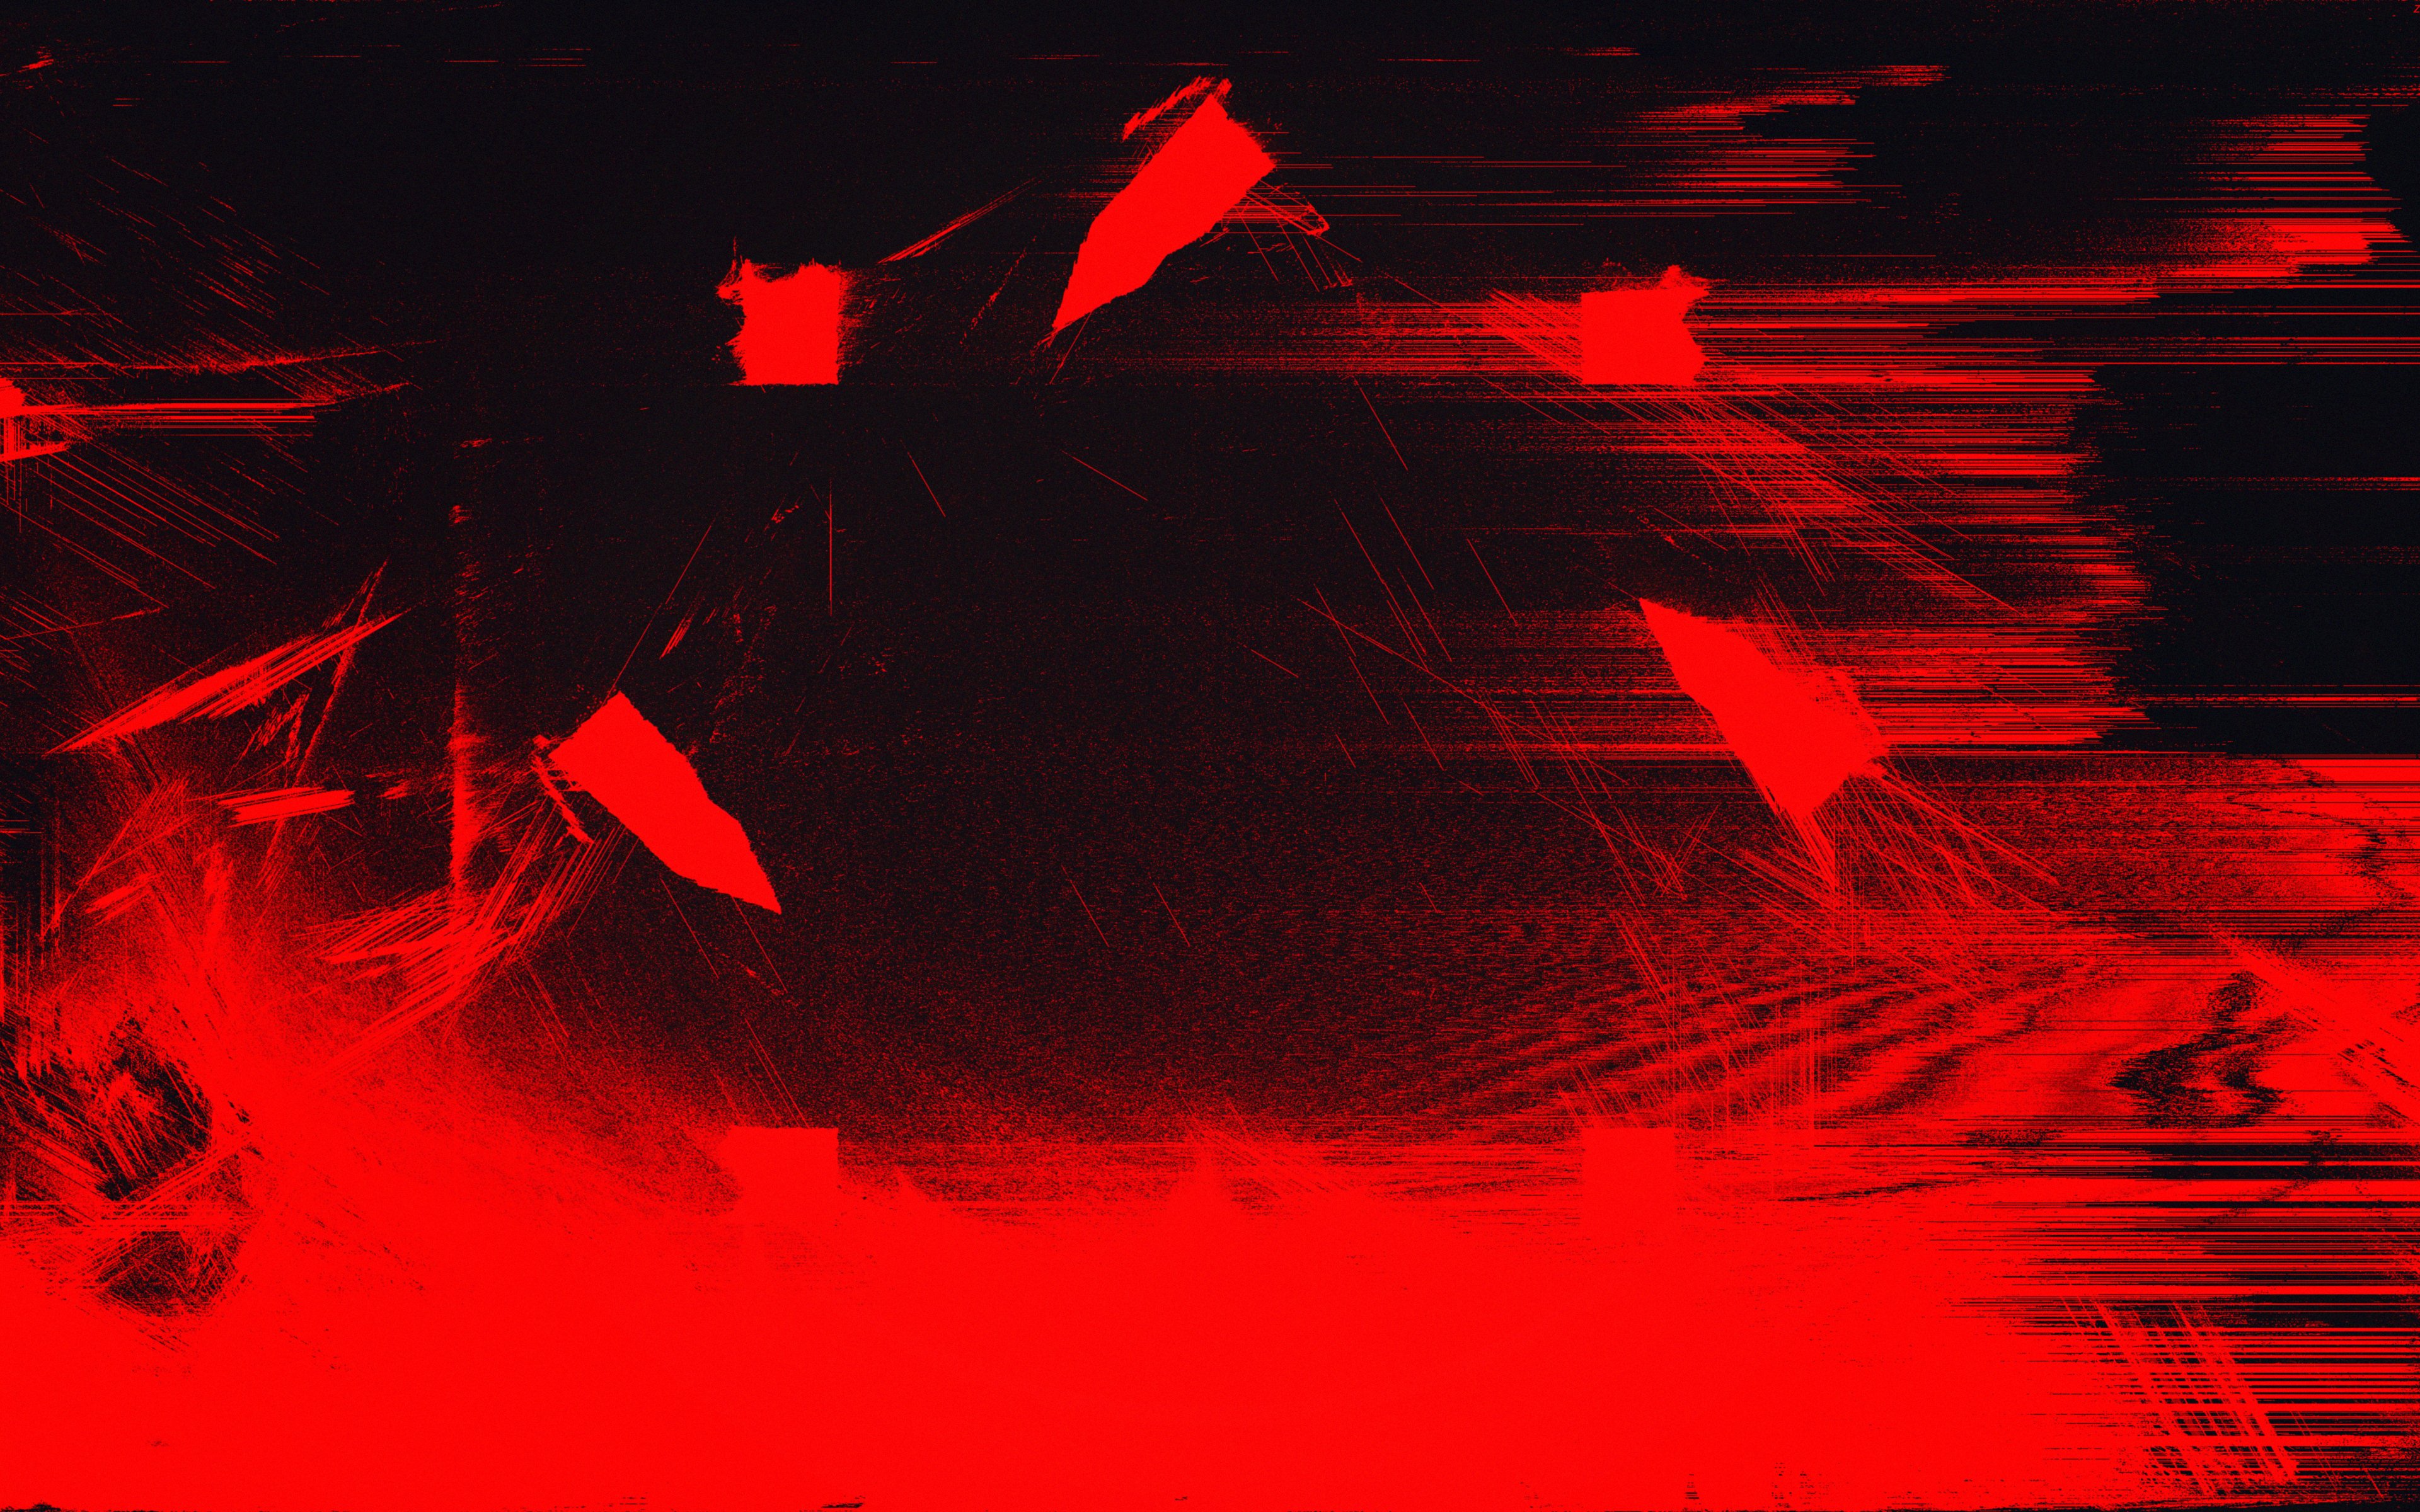 Hình nền máy tính với màu đỏ đậm thấm đượm những đường vạch glitch sẽ giành giật sự chú ý của bạn ngay từ cái nhìn đầu tiên. Đừng bỏ qua cơ hội để khám phá một không gian ảo đầy ấn tượng, sôi động và ngập tràn màu sắc.